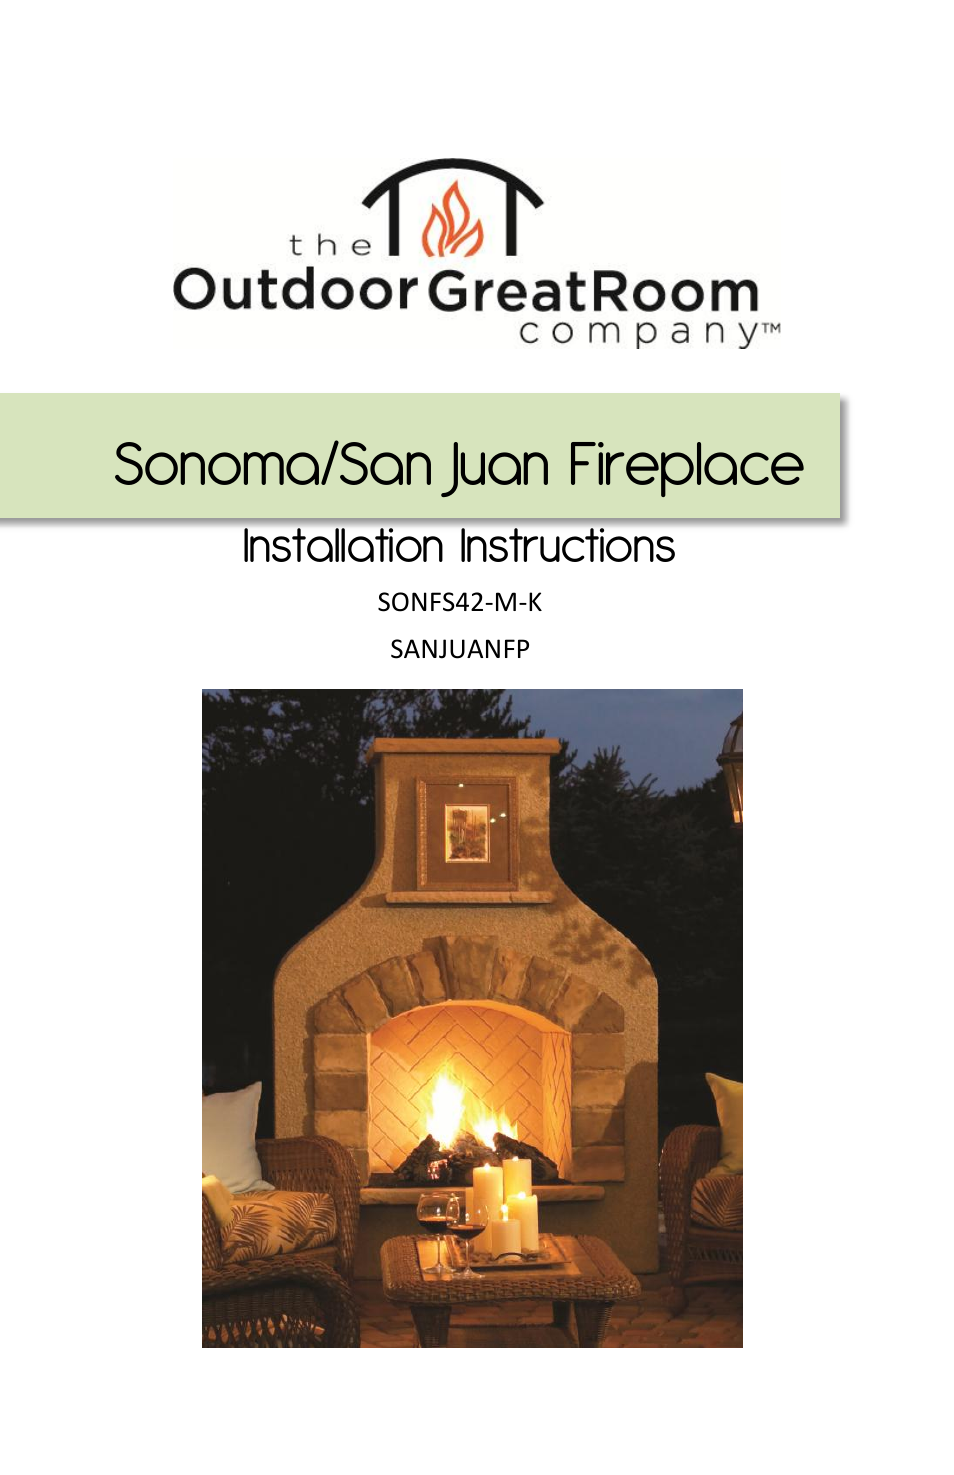 Sonoma and San Juan Fireplace